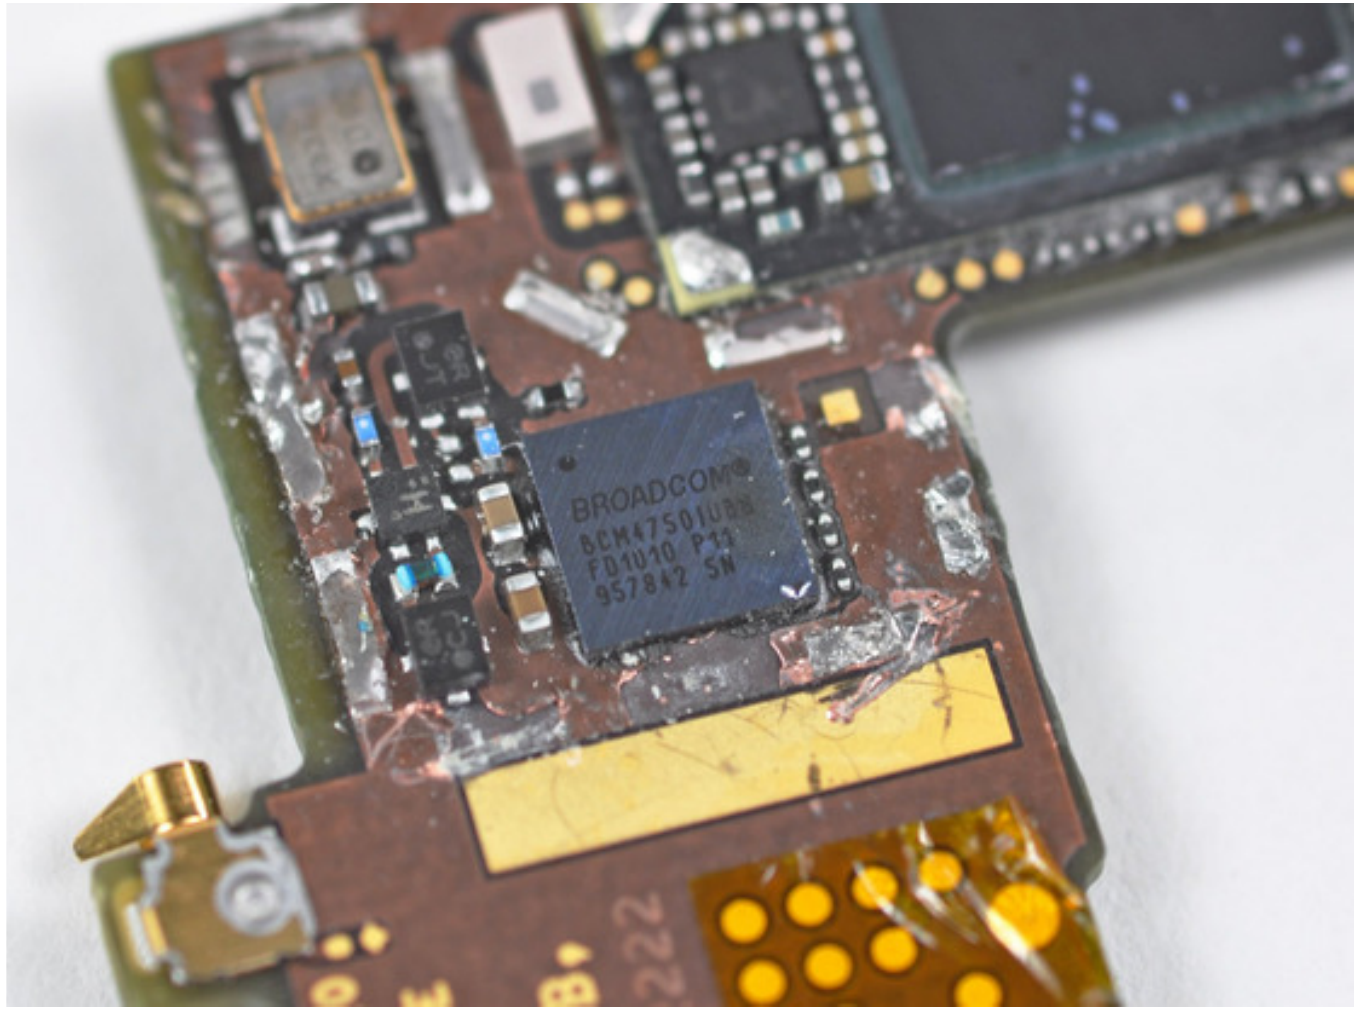 ГНСС-чип Broadcom BCM4750 на плате телефона iPhone 4 версии GSM (металлический защитный экран снят, источник ifixit.com)